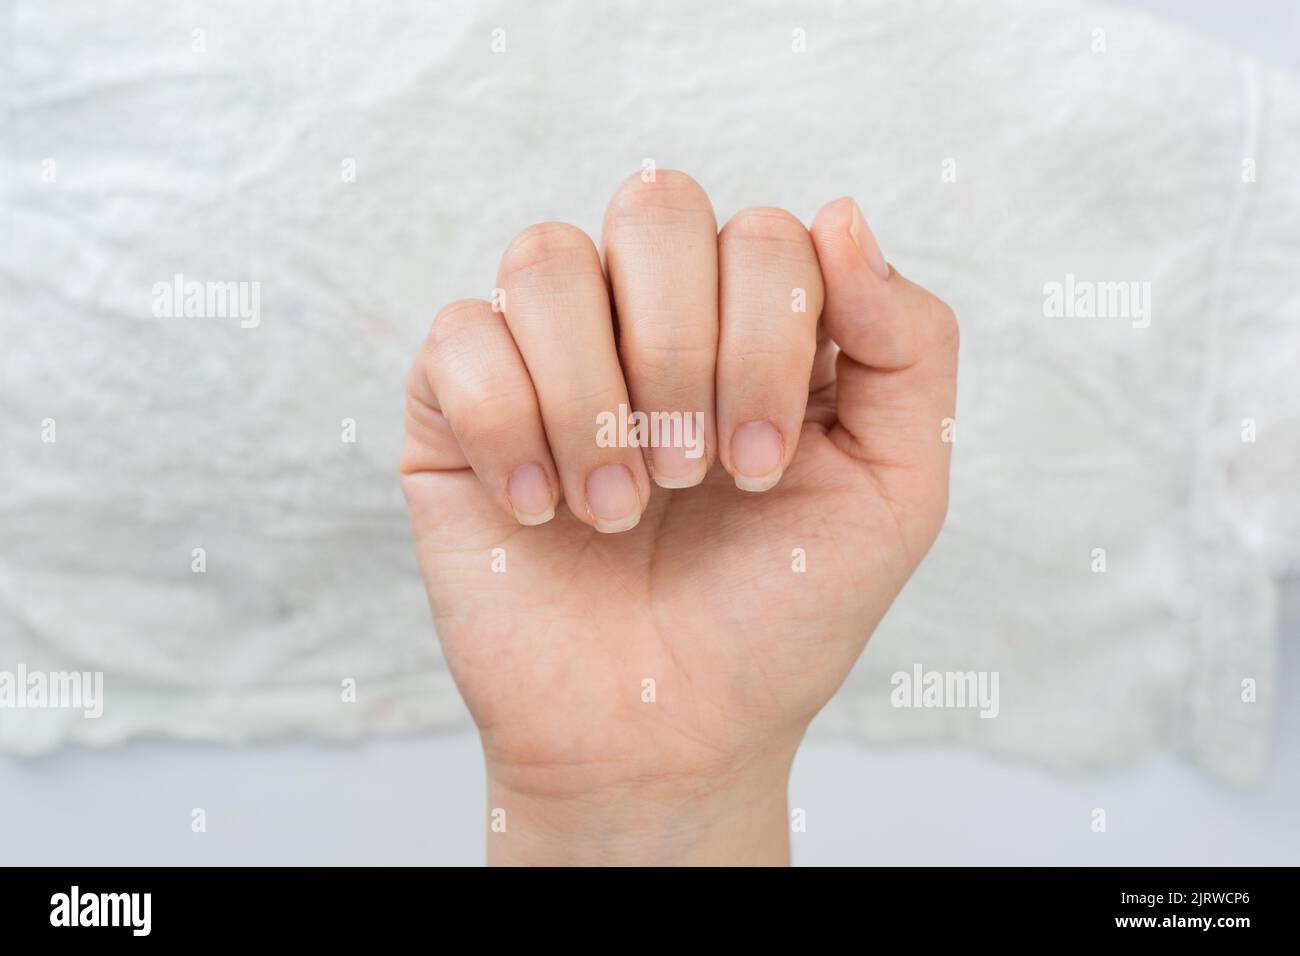 mano de una mujer latina mostrando sus uñas en una posición cerrada de la mano, en el fondo una toalla blanca, uñas semi arregladas listas para la pintura y decoración de uñas Foto de stock